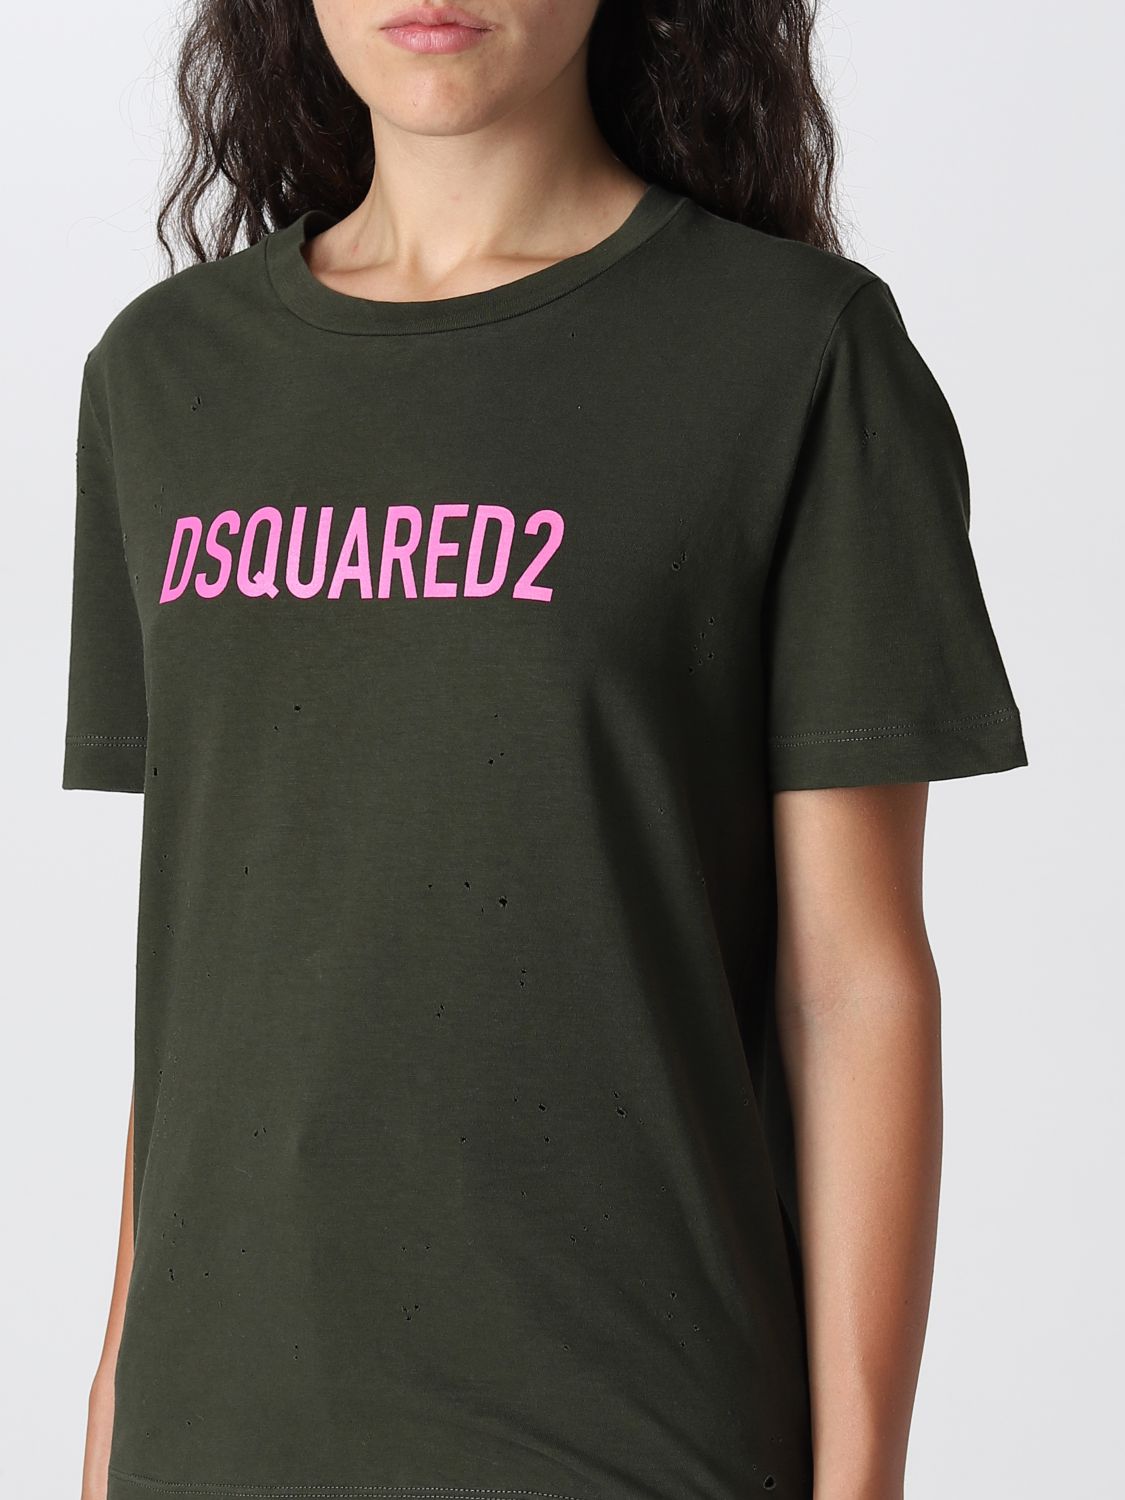 T-shirt Dsquared2: T-shirt Dsquared2 femme vert militaire 3